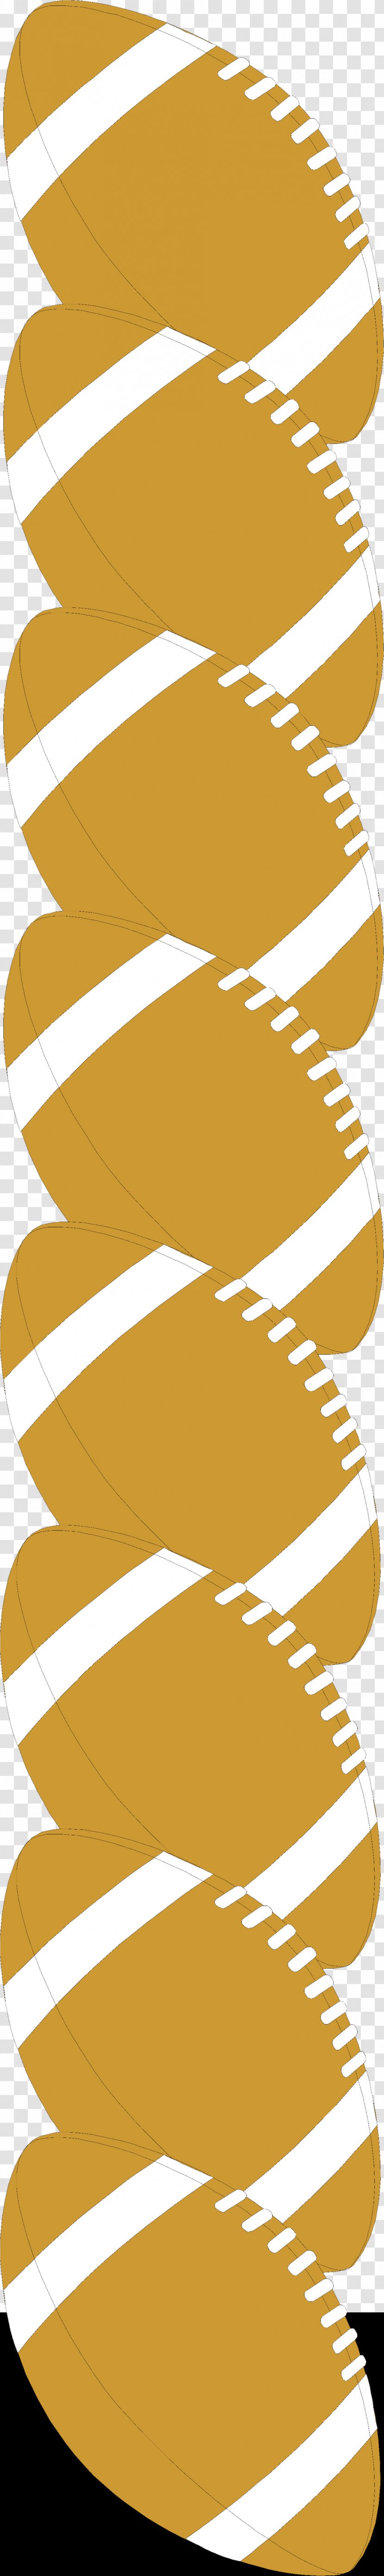 American Football Clip Art - Blog - Borders Transparent PNG